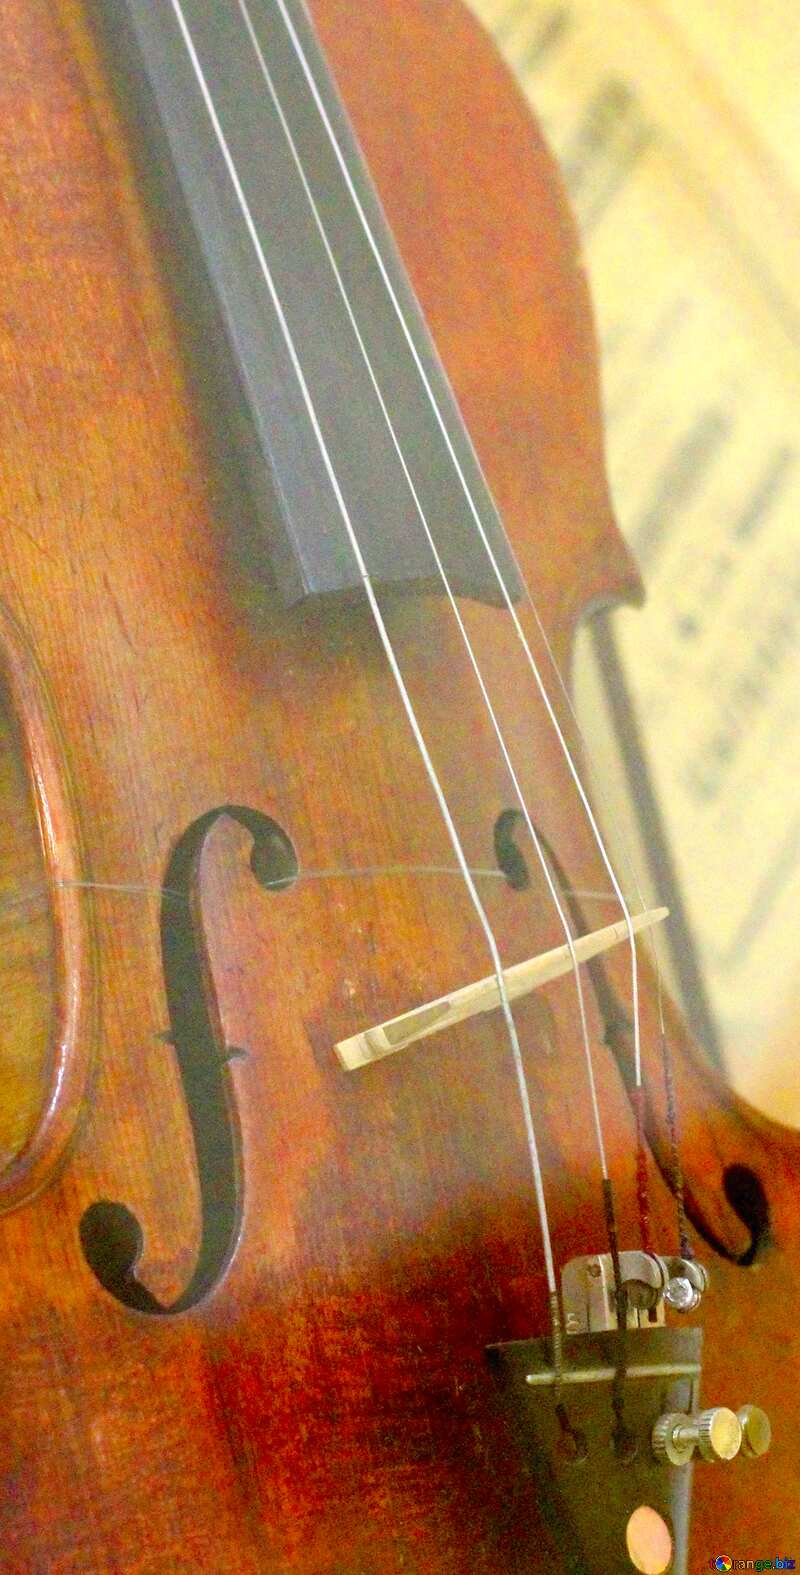 Image for profile picture Violin. №44204